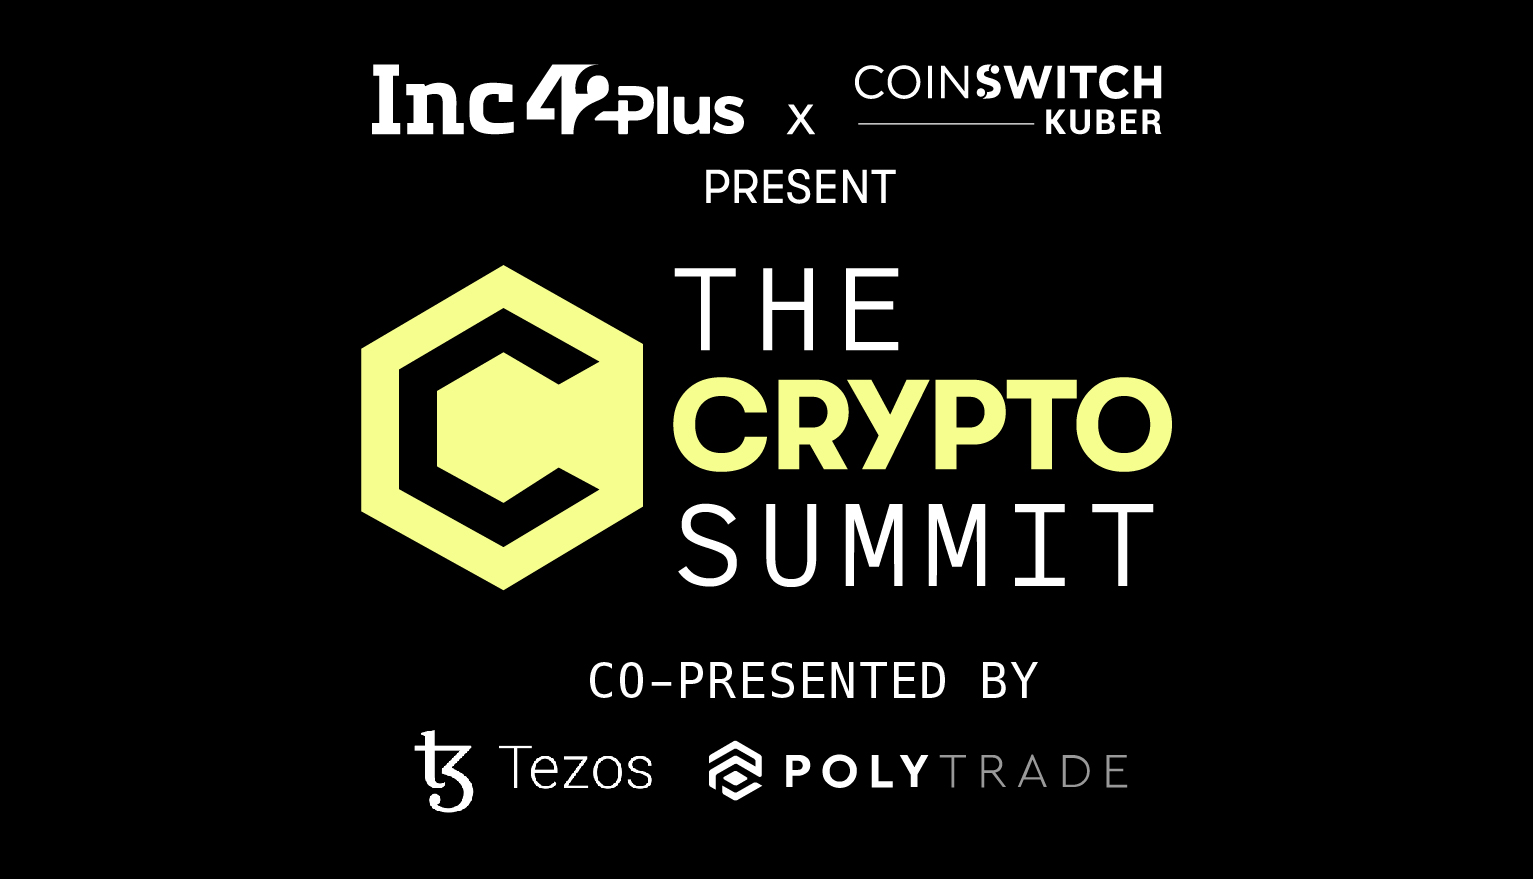 The Crypto Summit